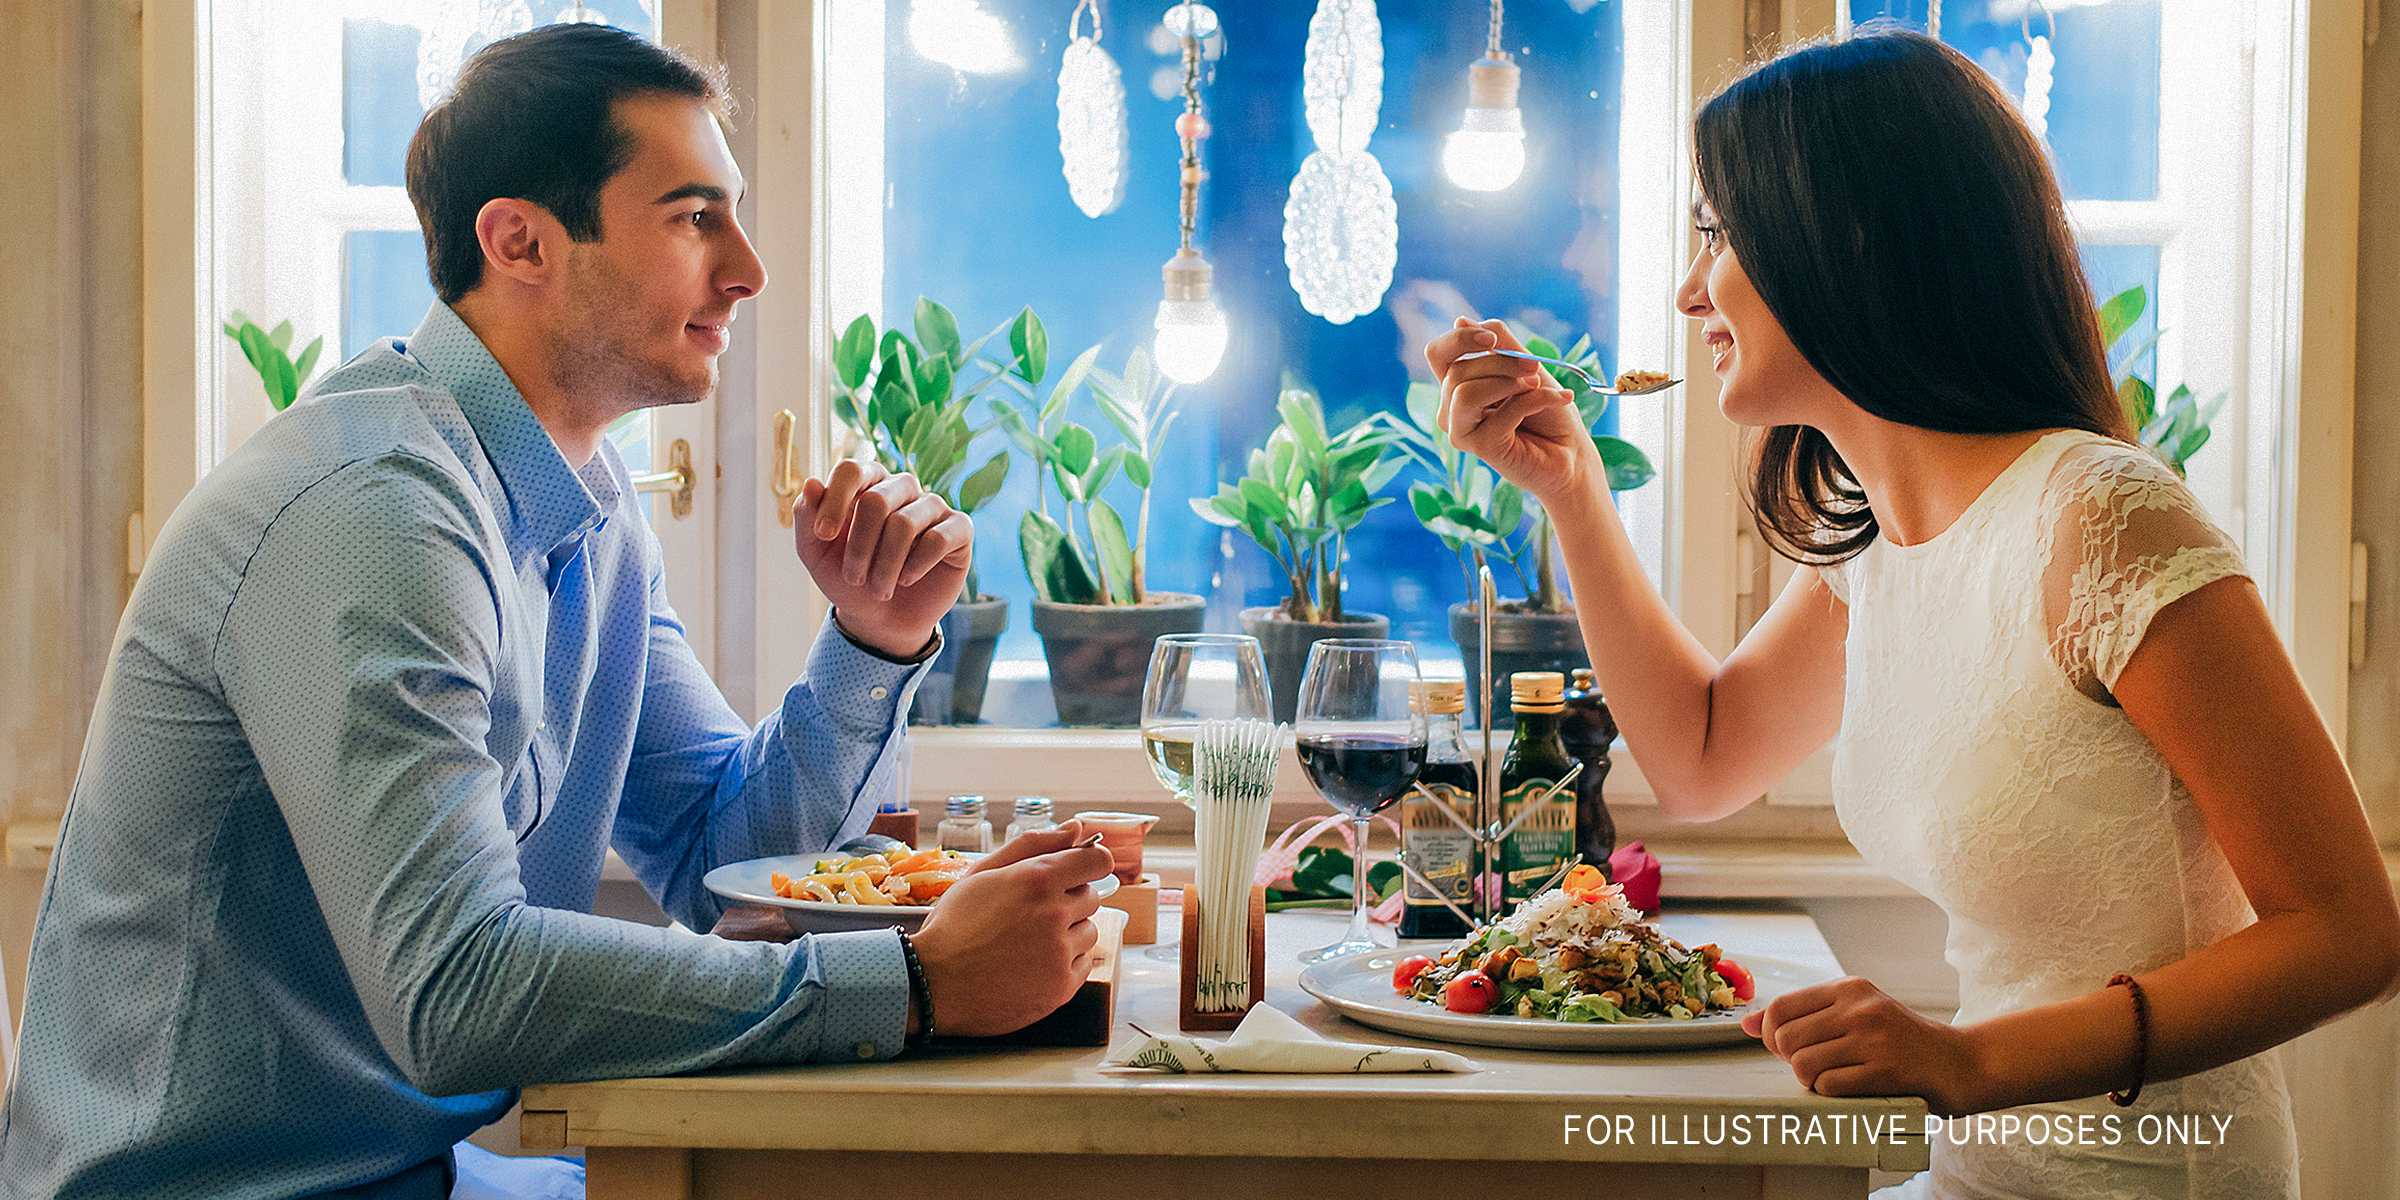 Mann und Frau beim Abendessen | Quelle: Getty Images